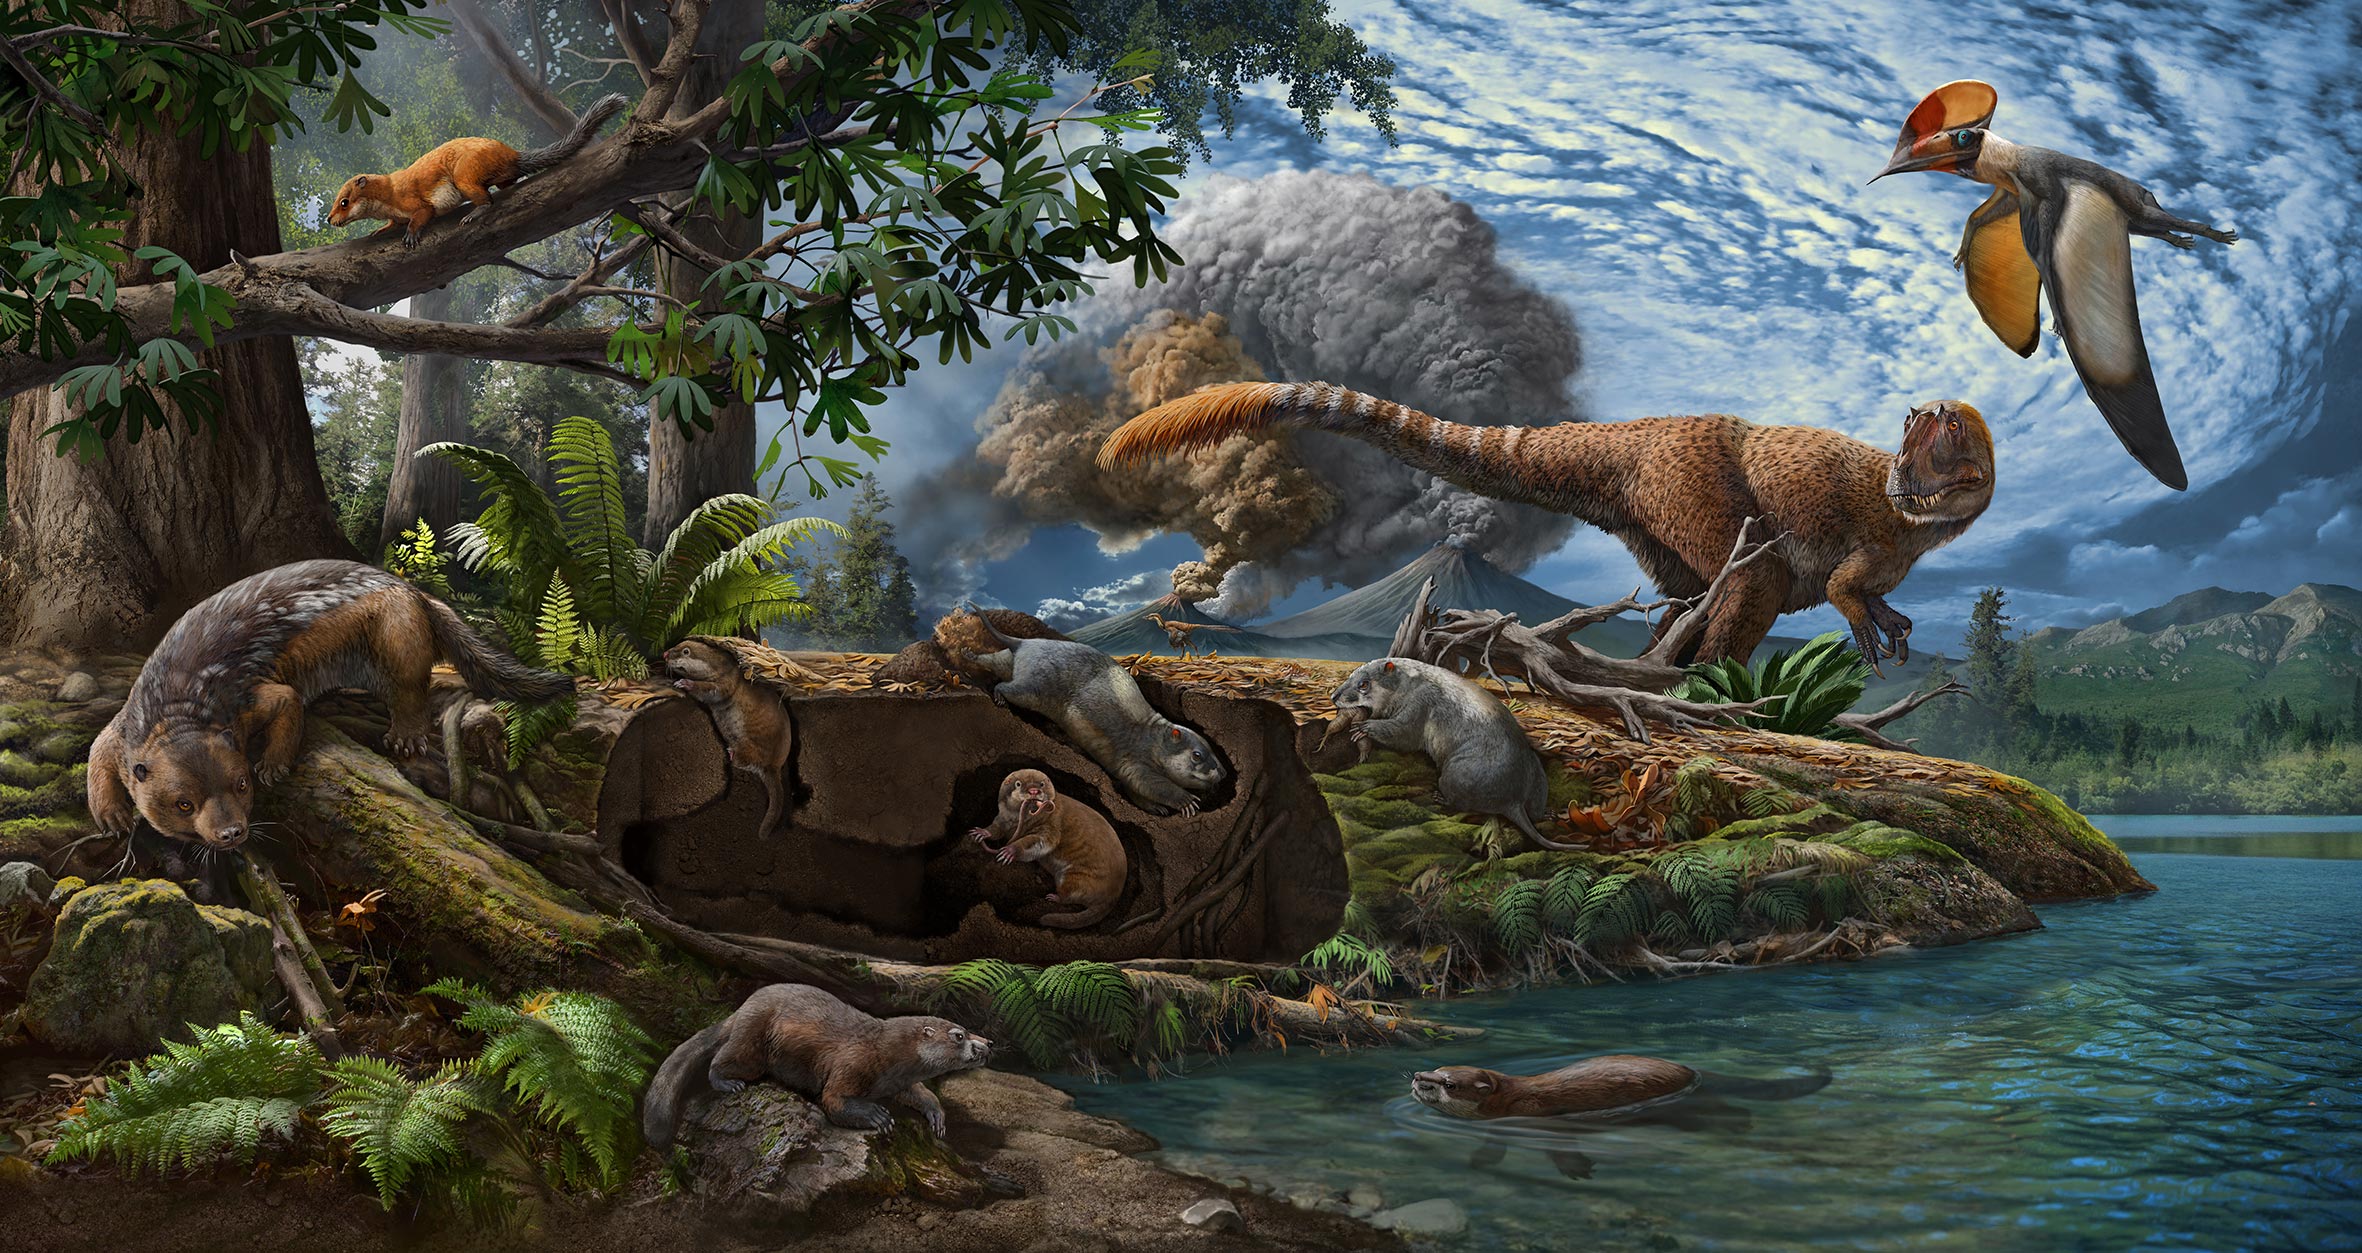 Динозавры жили миллионов лет назад. Чжао Чжуан палеоарт. Юрский период мезозойской эры. Меловой период мезозойской эры. Млекопитающие Юрского периода.